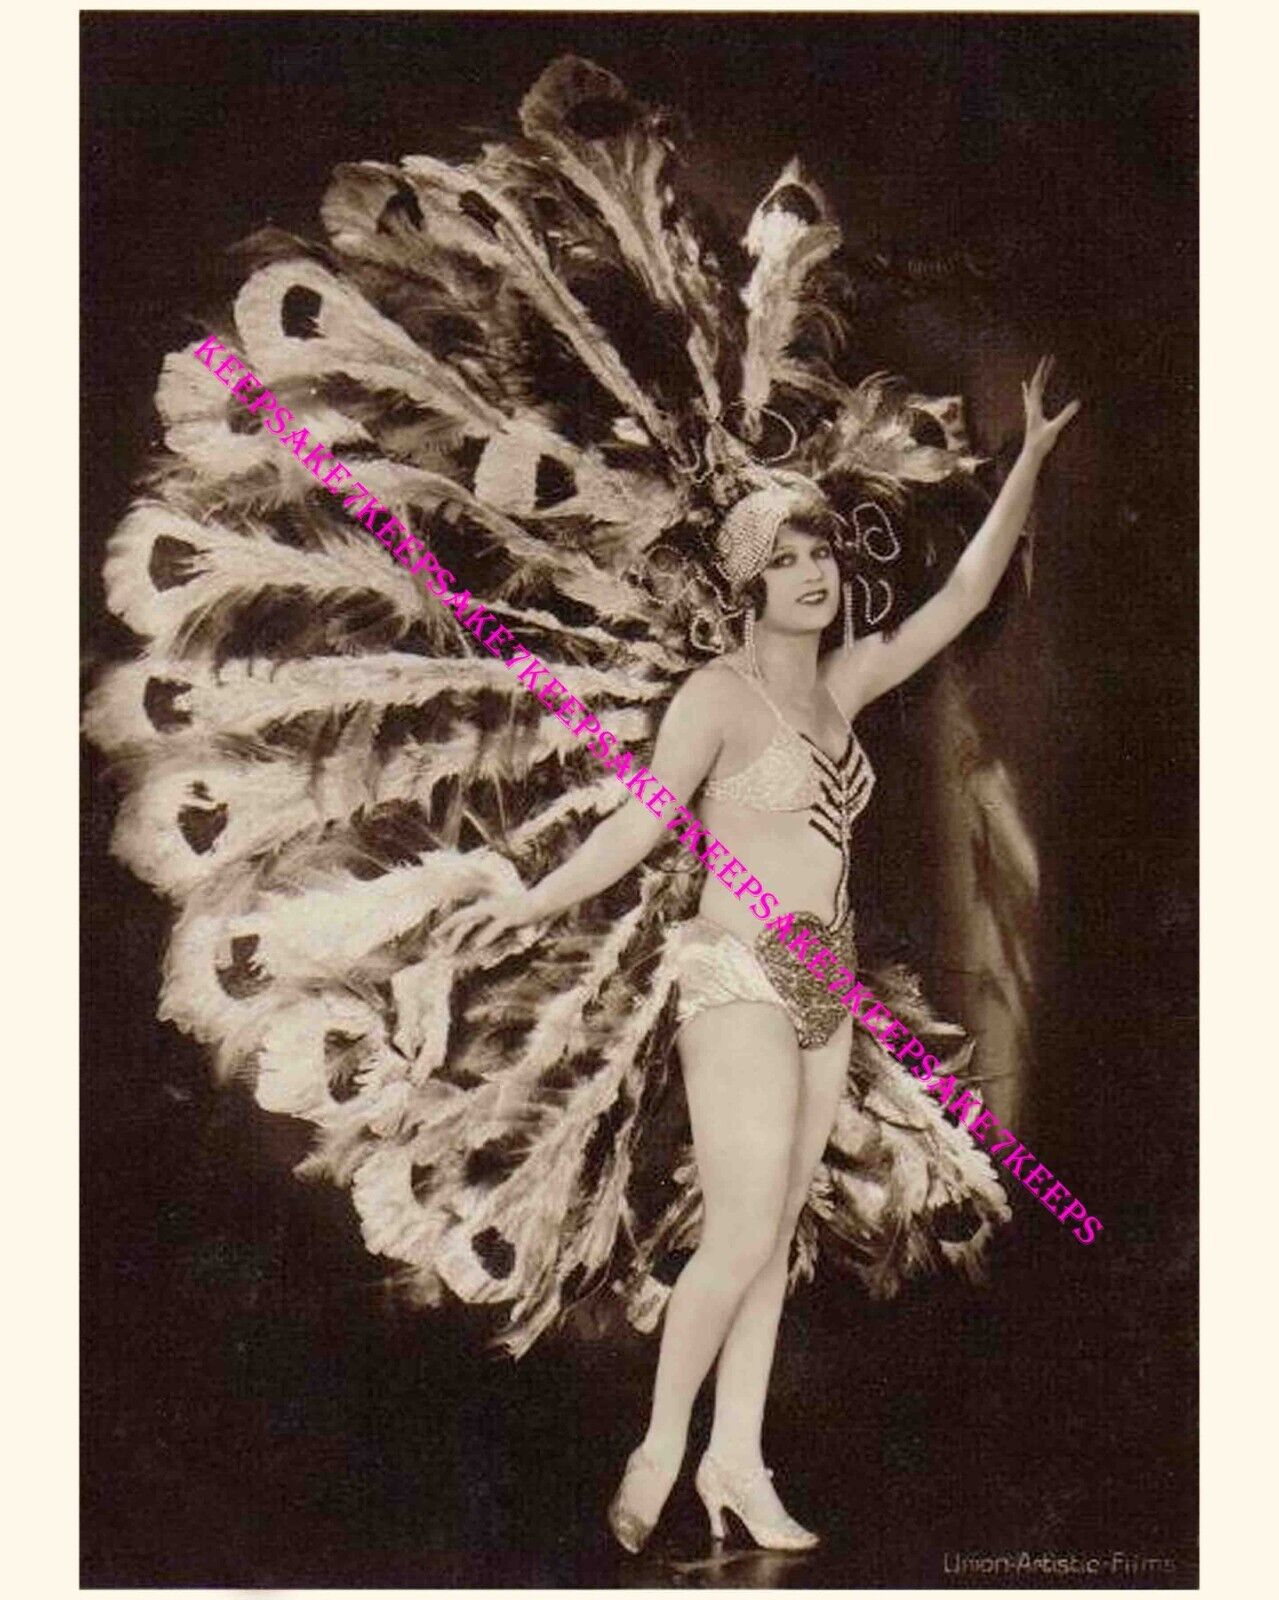 1920s-1930s ACTRESS LILI DAMITA SPECTACULAR COSTUME LARGE LEGGY PHOTO A-LDAM44